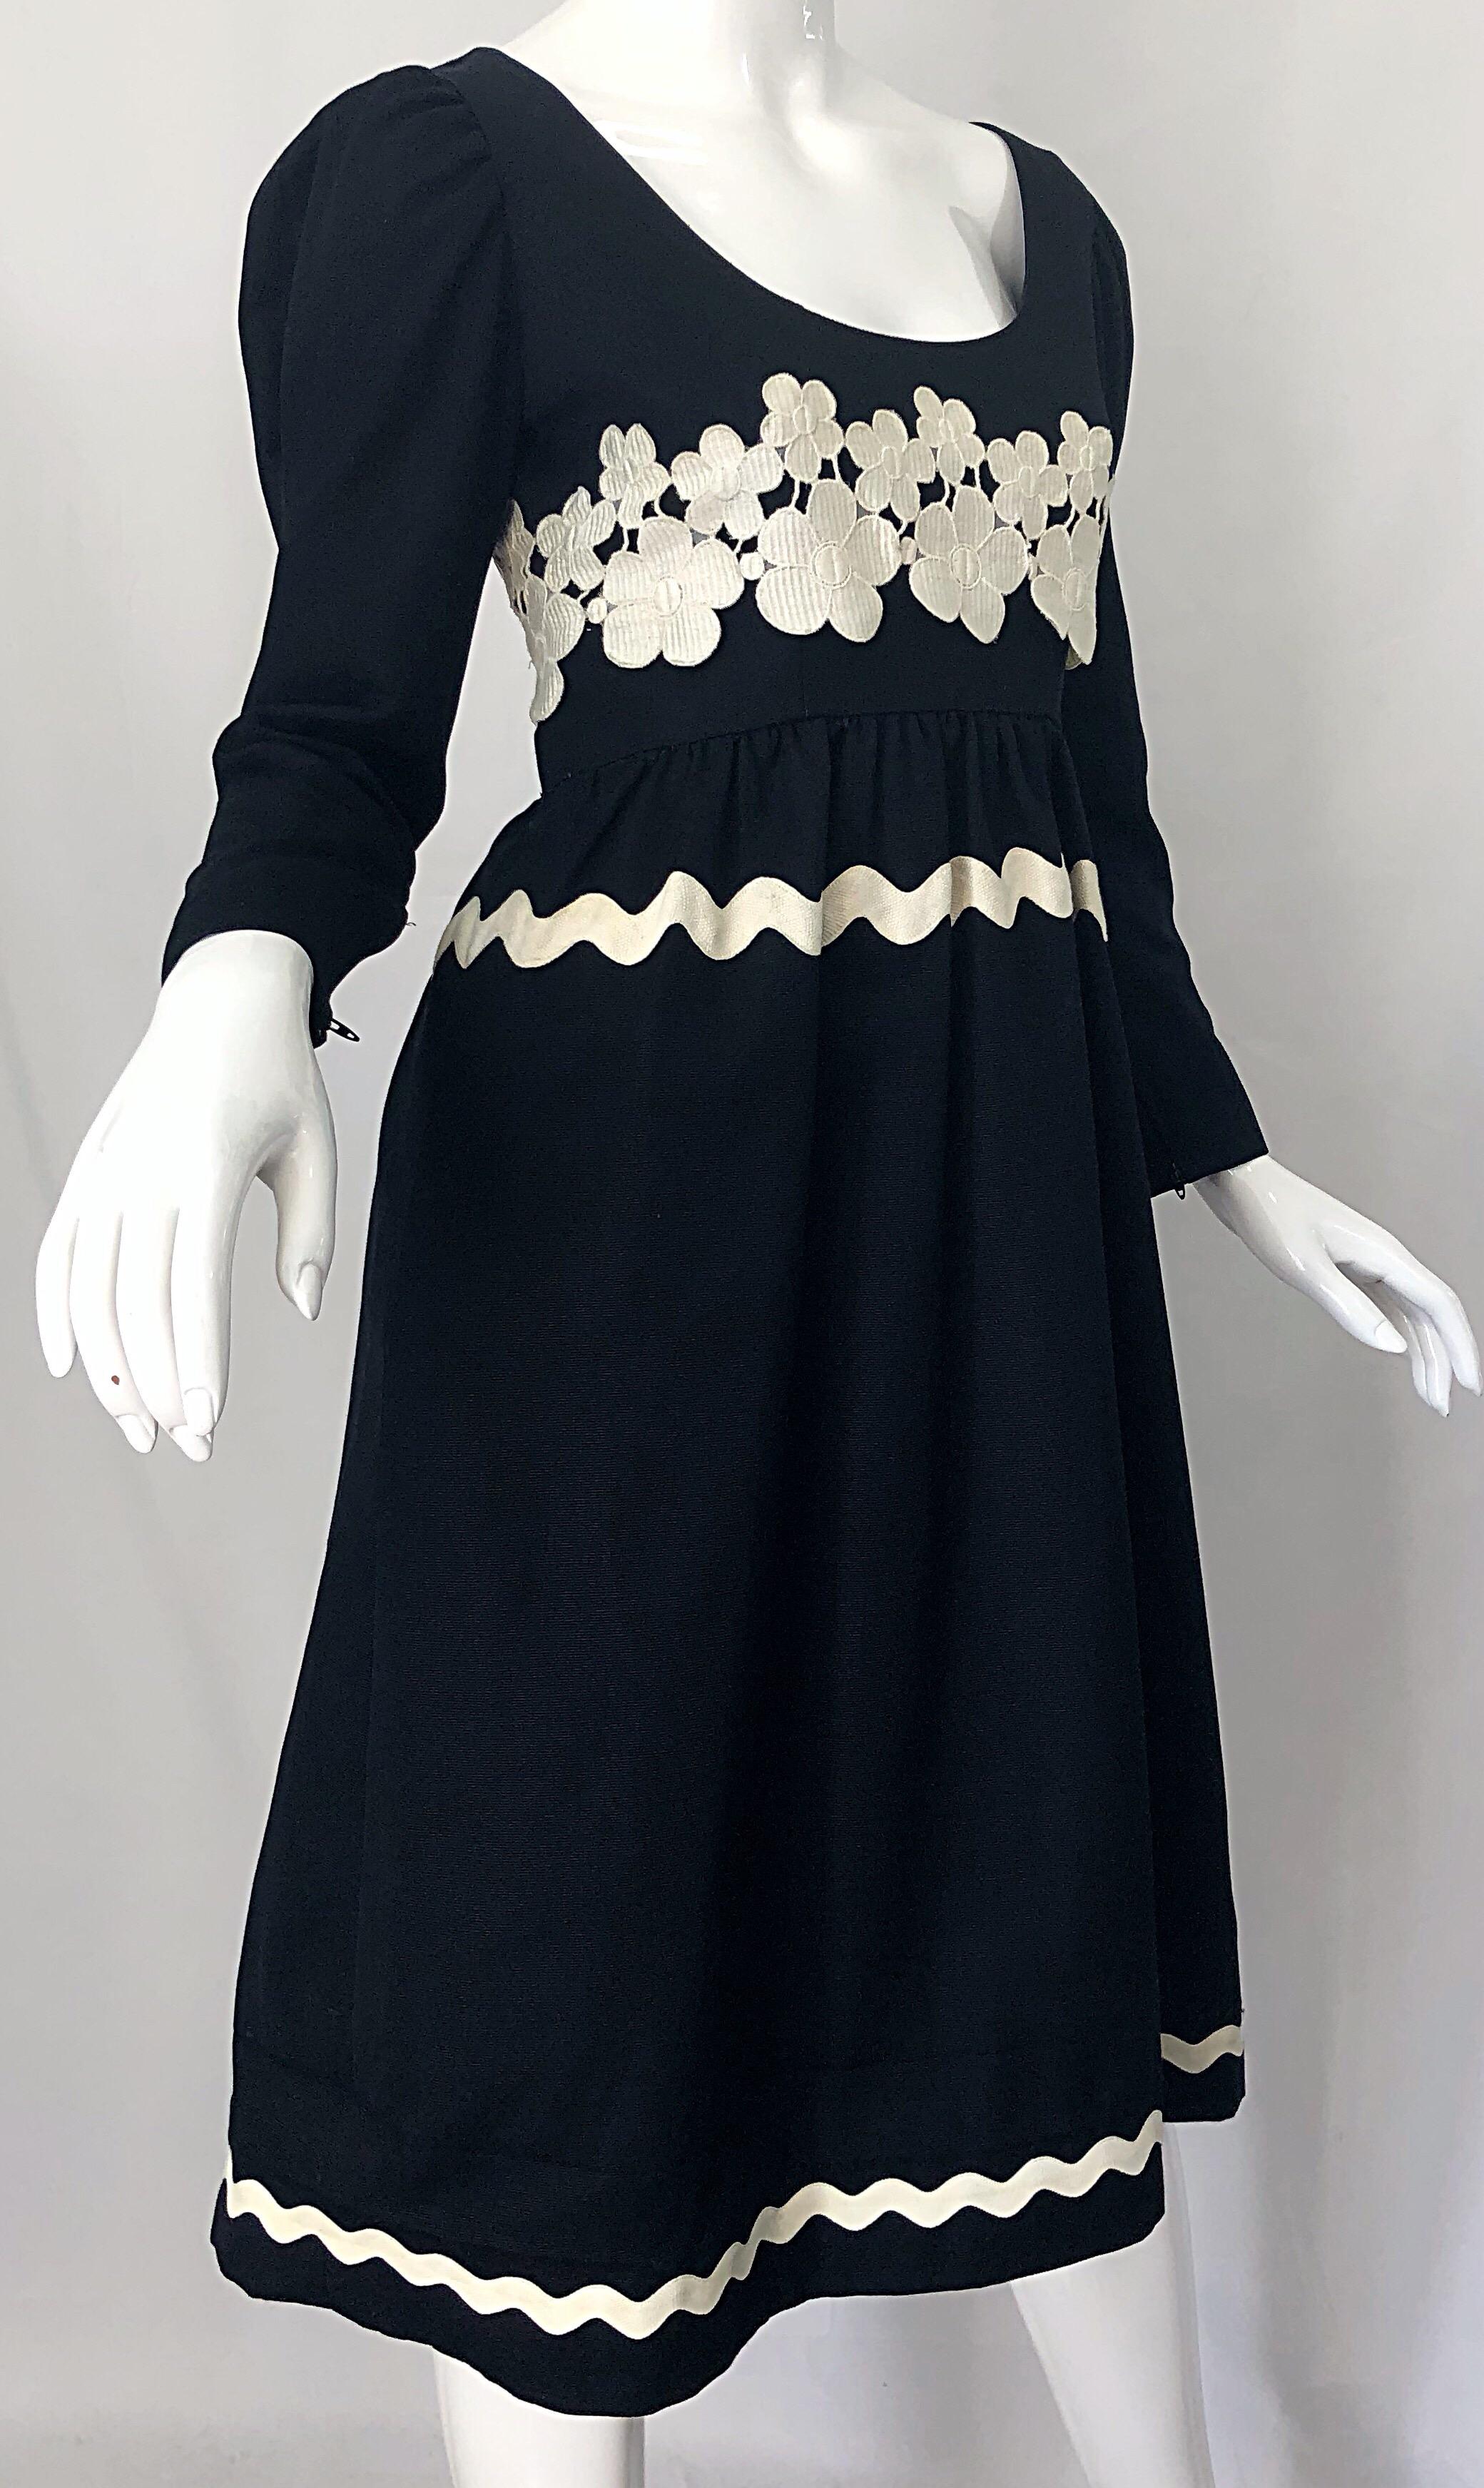 1960s Oscar de la Renta Black and White Embroidered Flower Rickrack 60s Dress For Sale 1